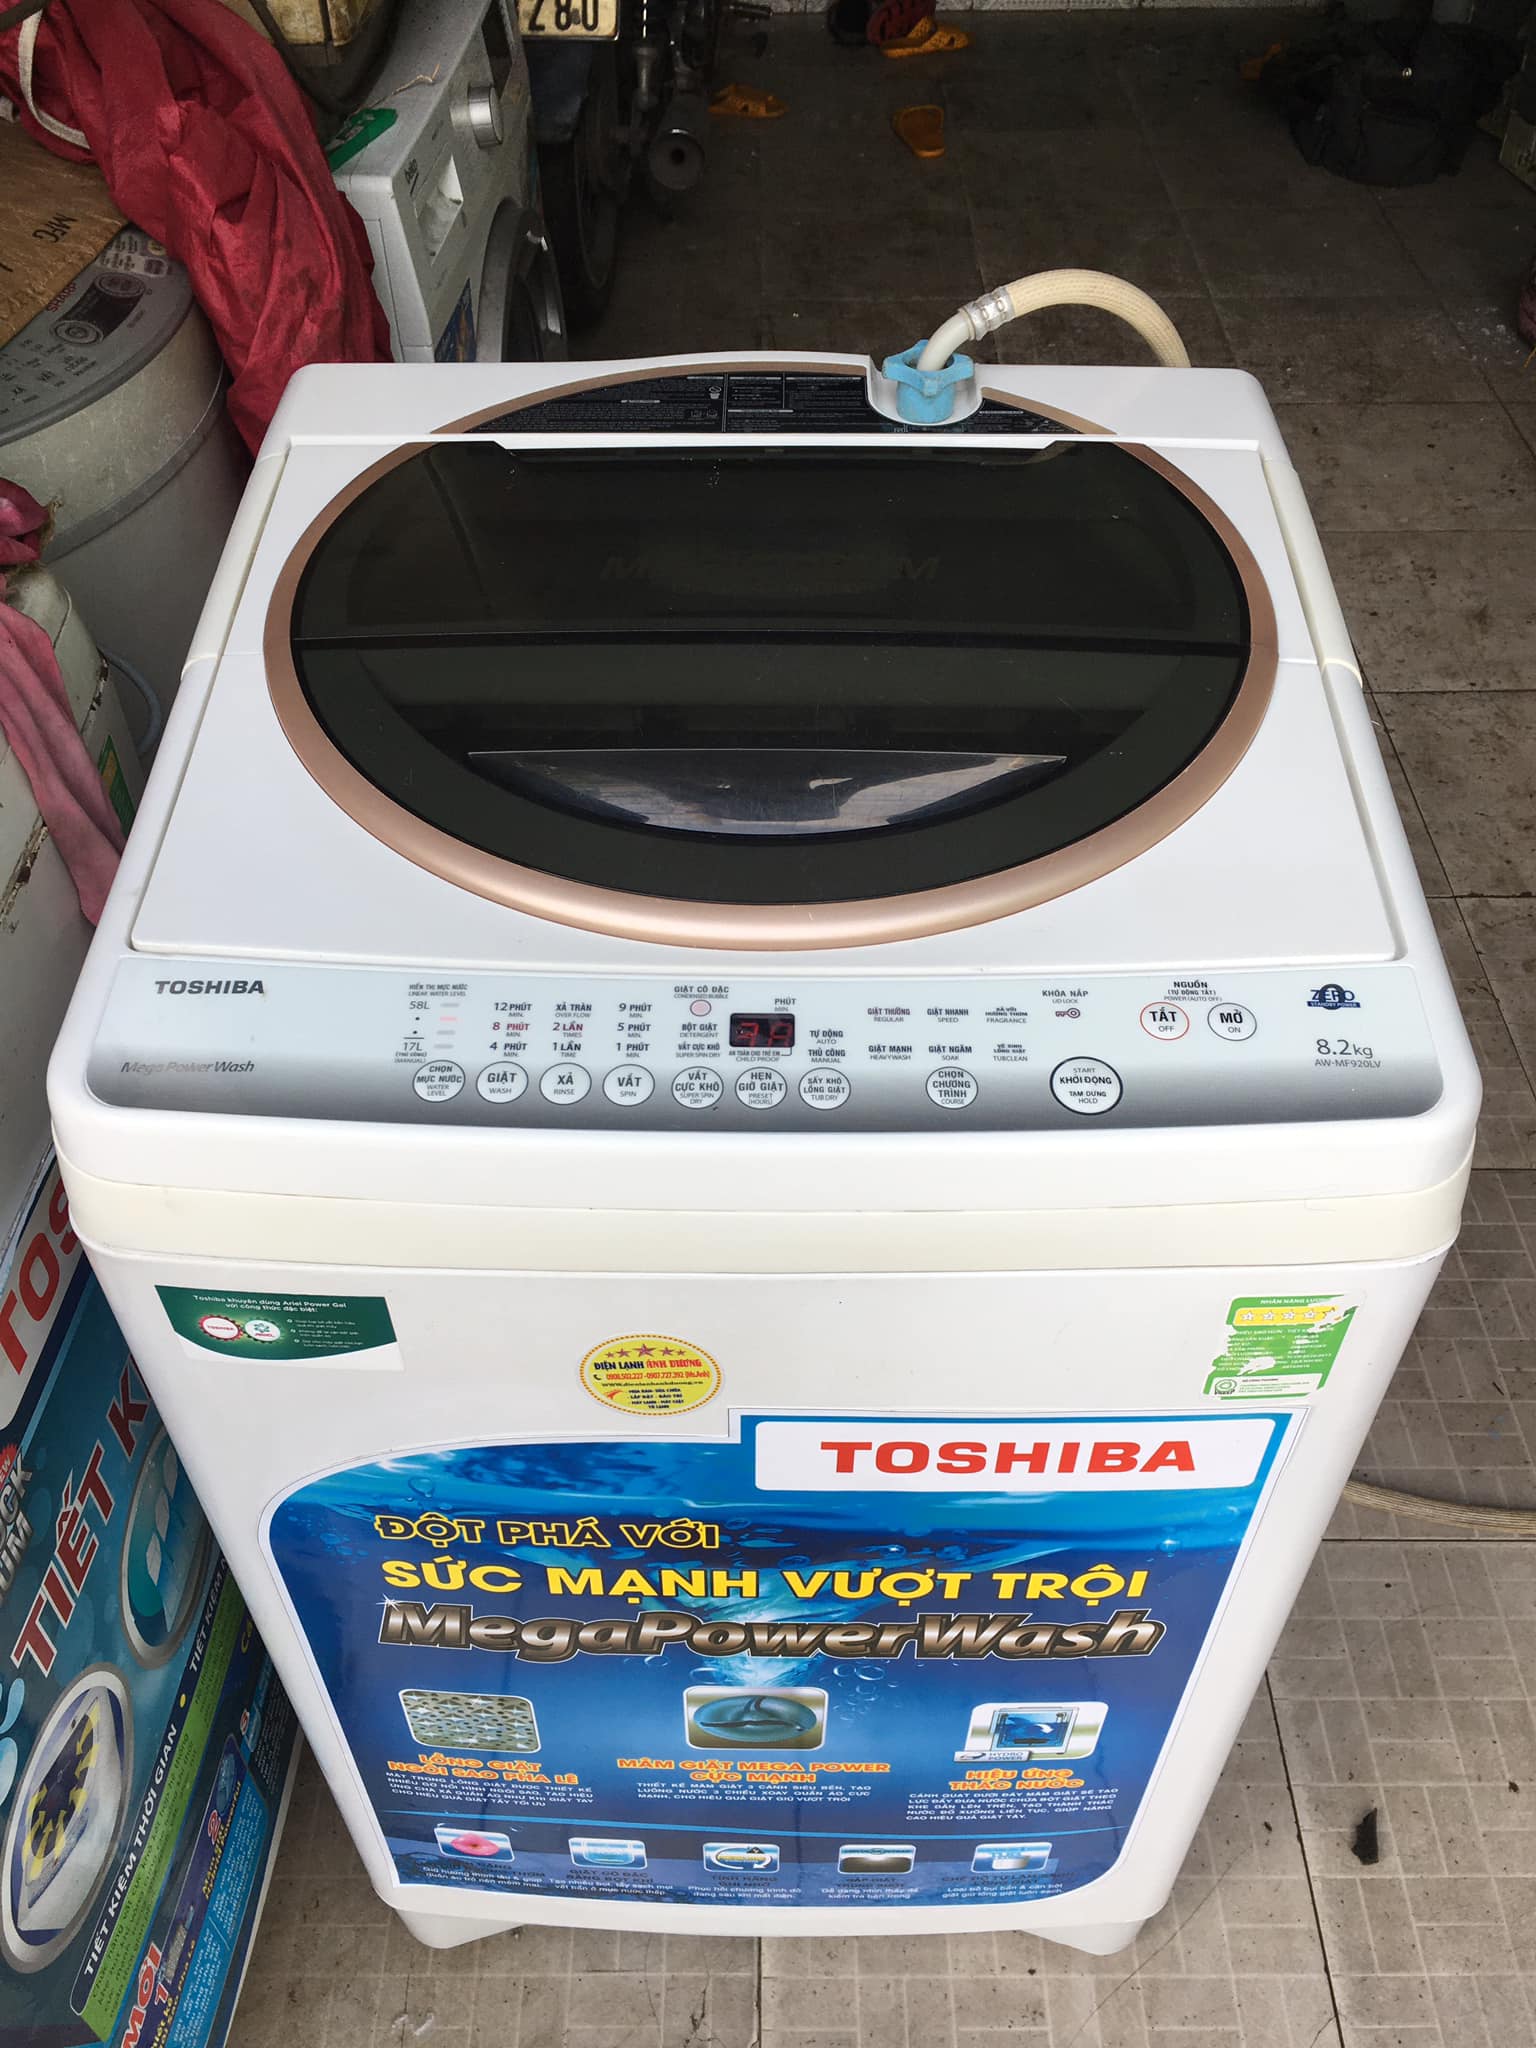 Máy giặt Toshiba (8.2kg) nguyên zin, không sửa chữa